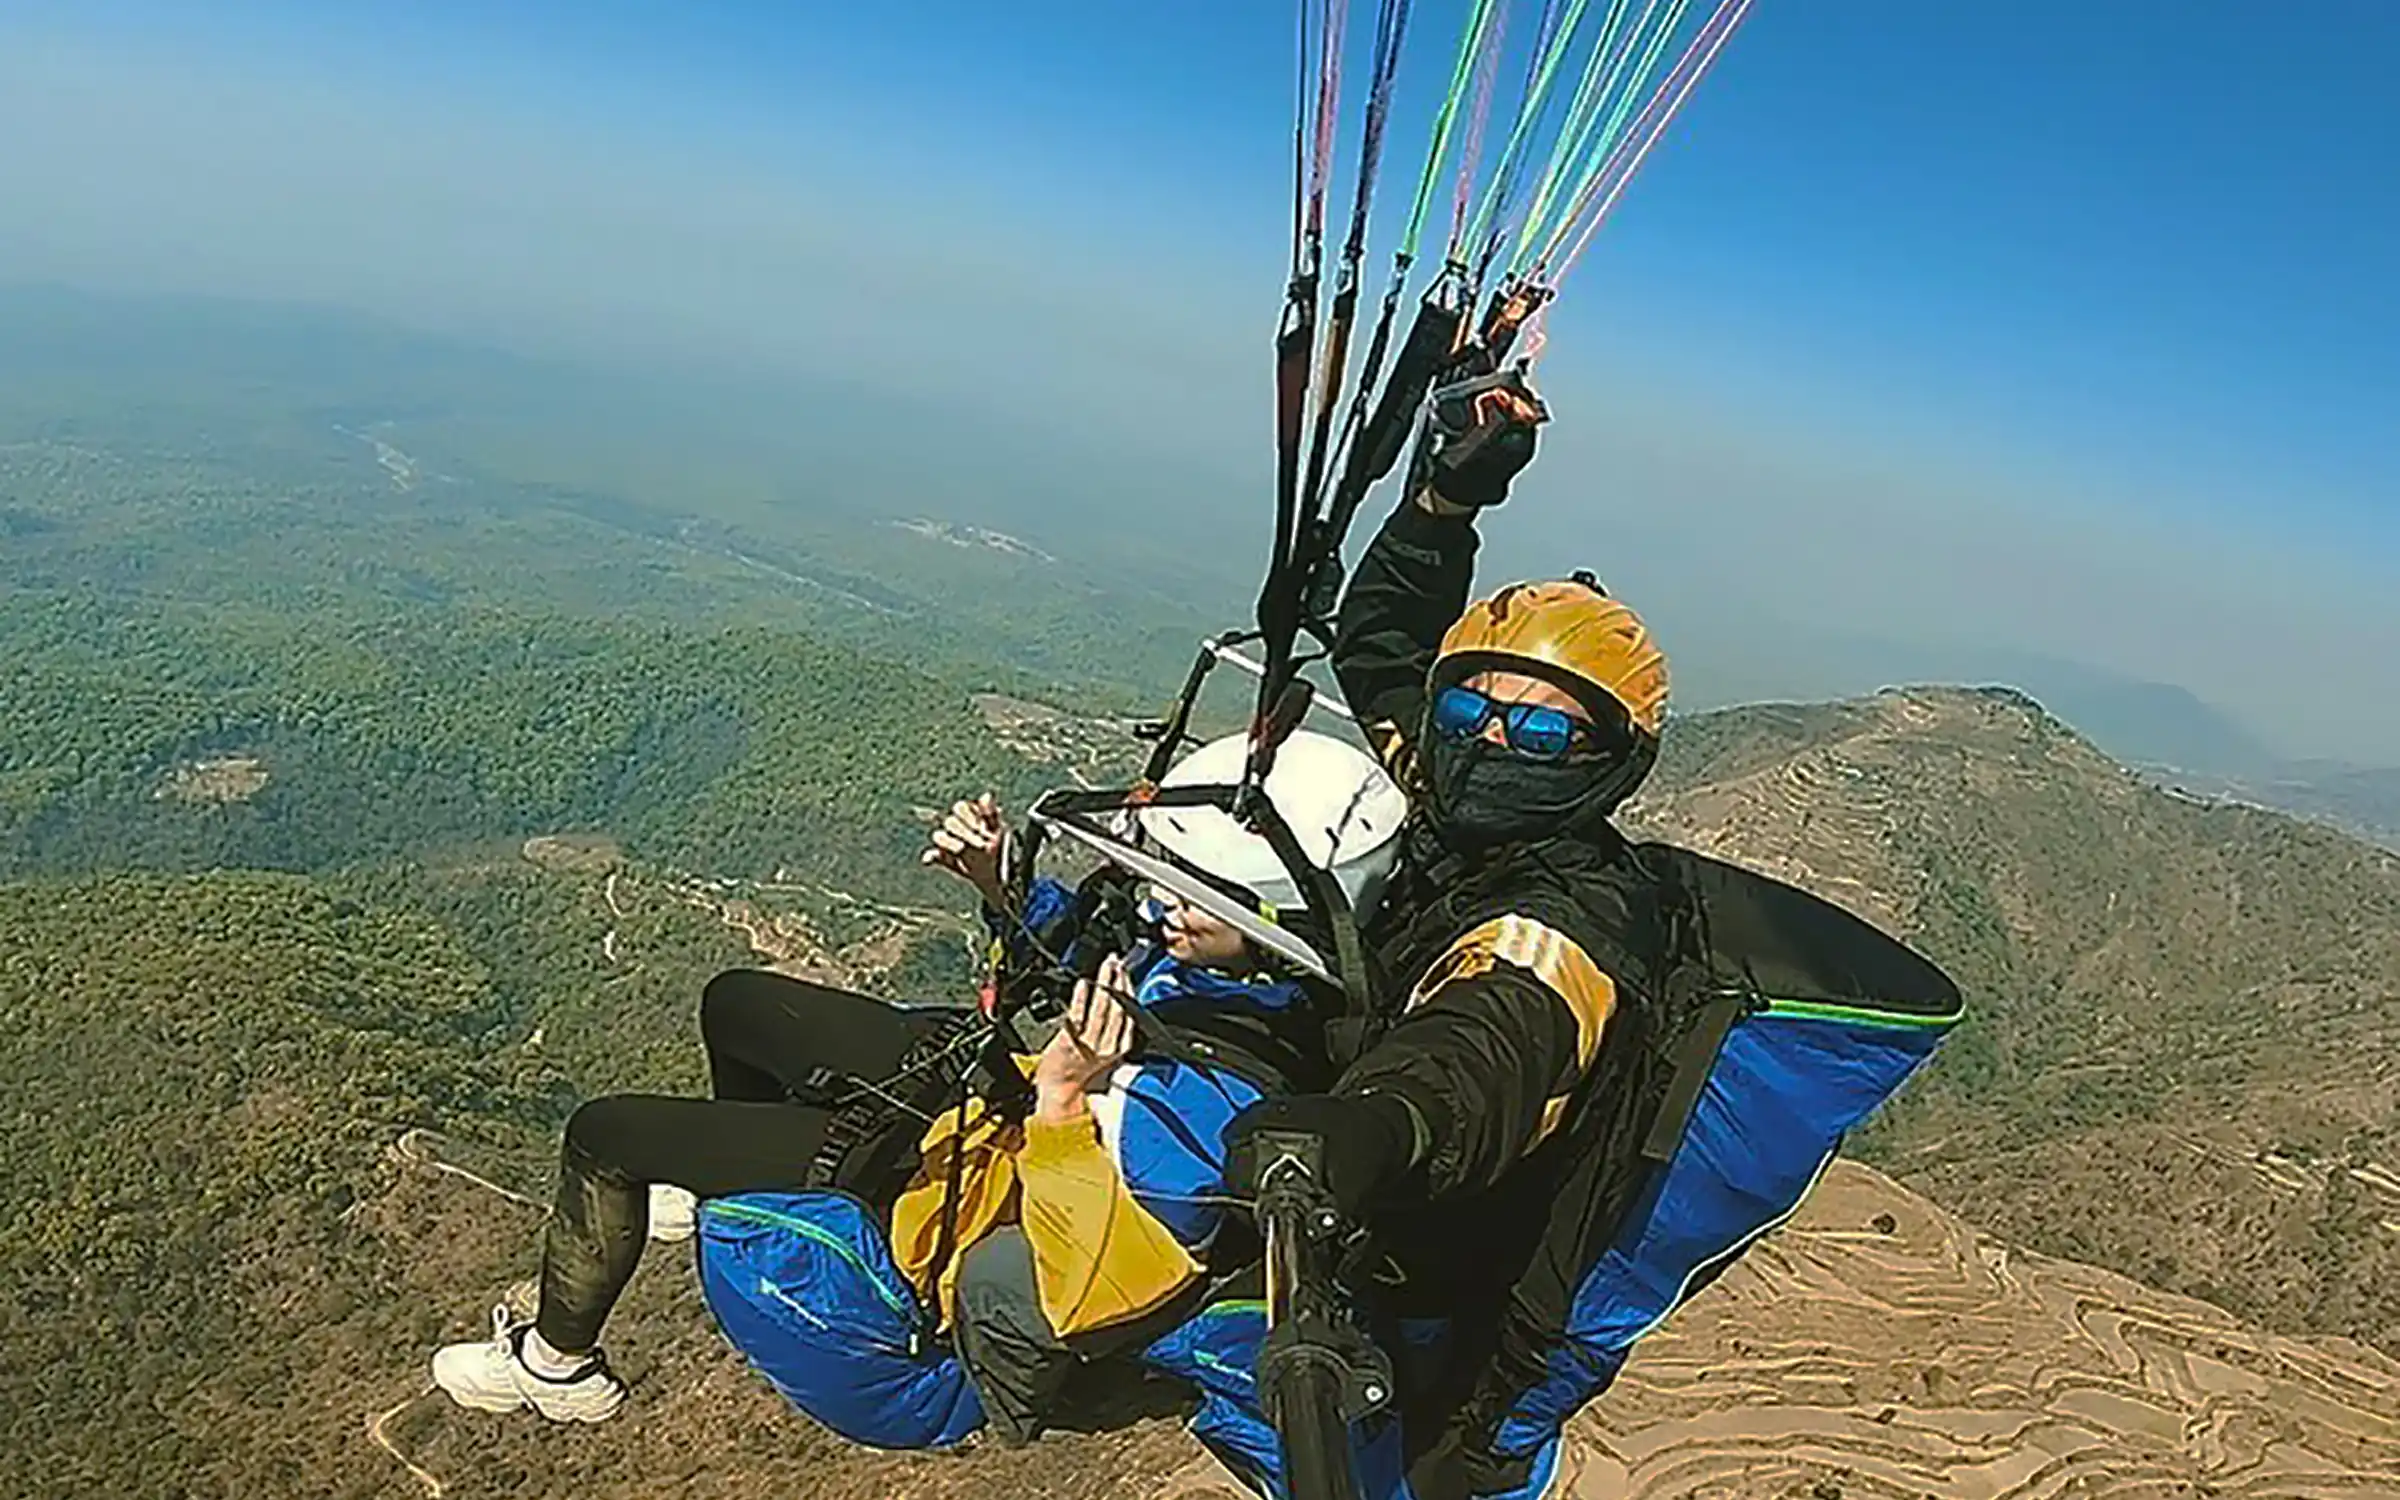 Paragliding in Nainital